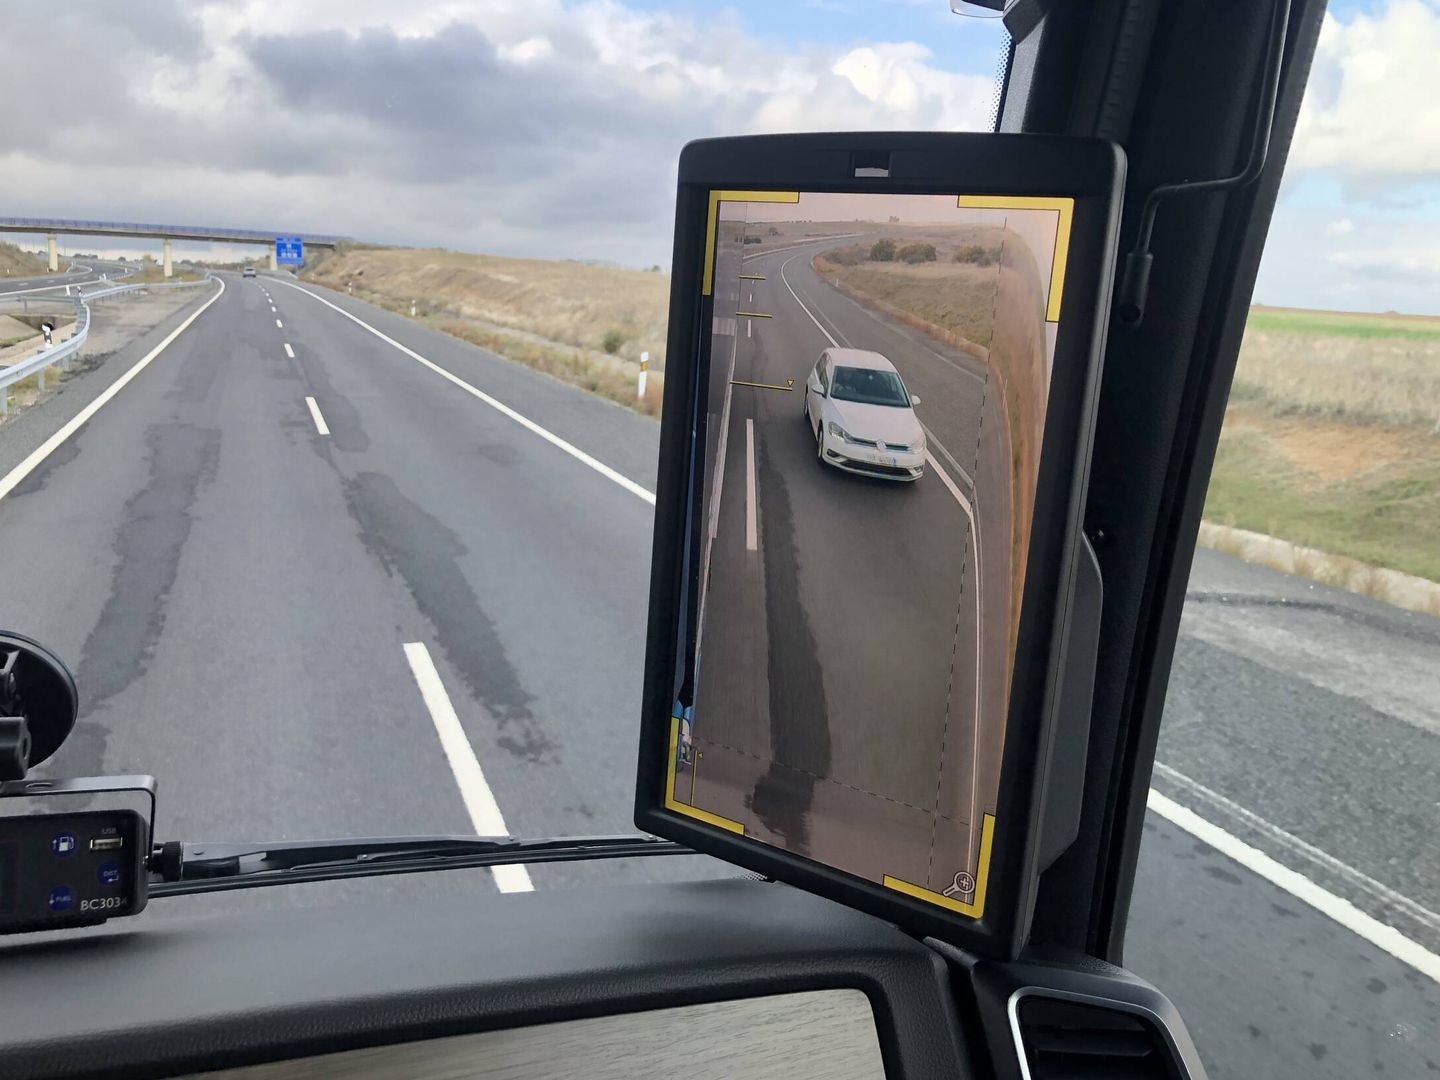 Si cuando aún no hemos rebasado por completo al vehículo intentamos volver a la derecha, la pantalla parpadea.